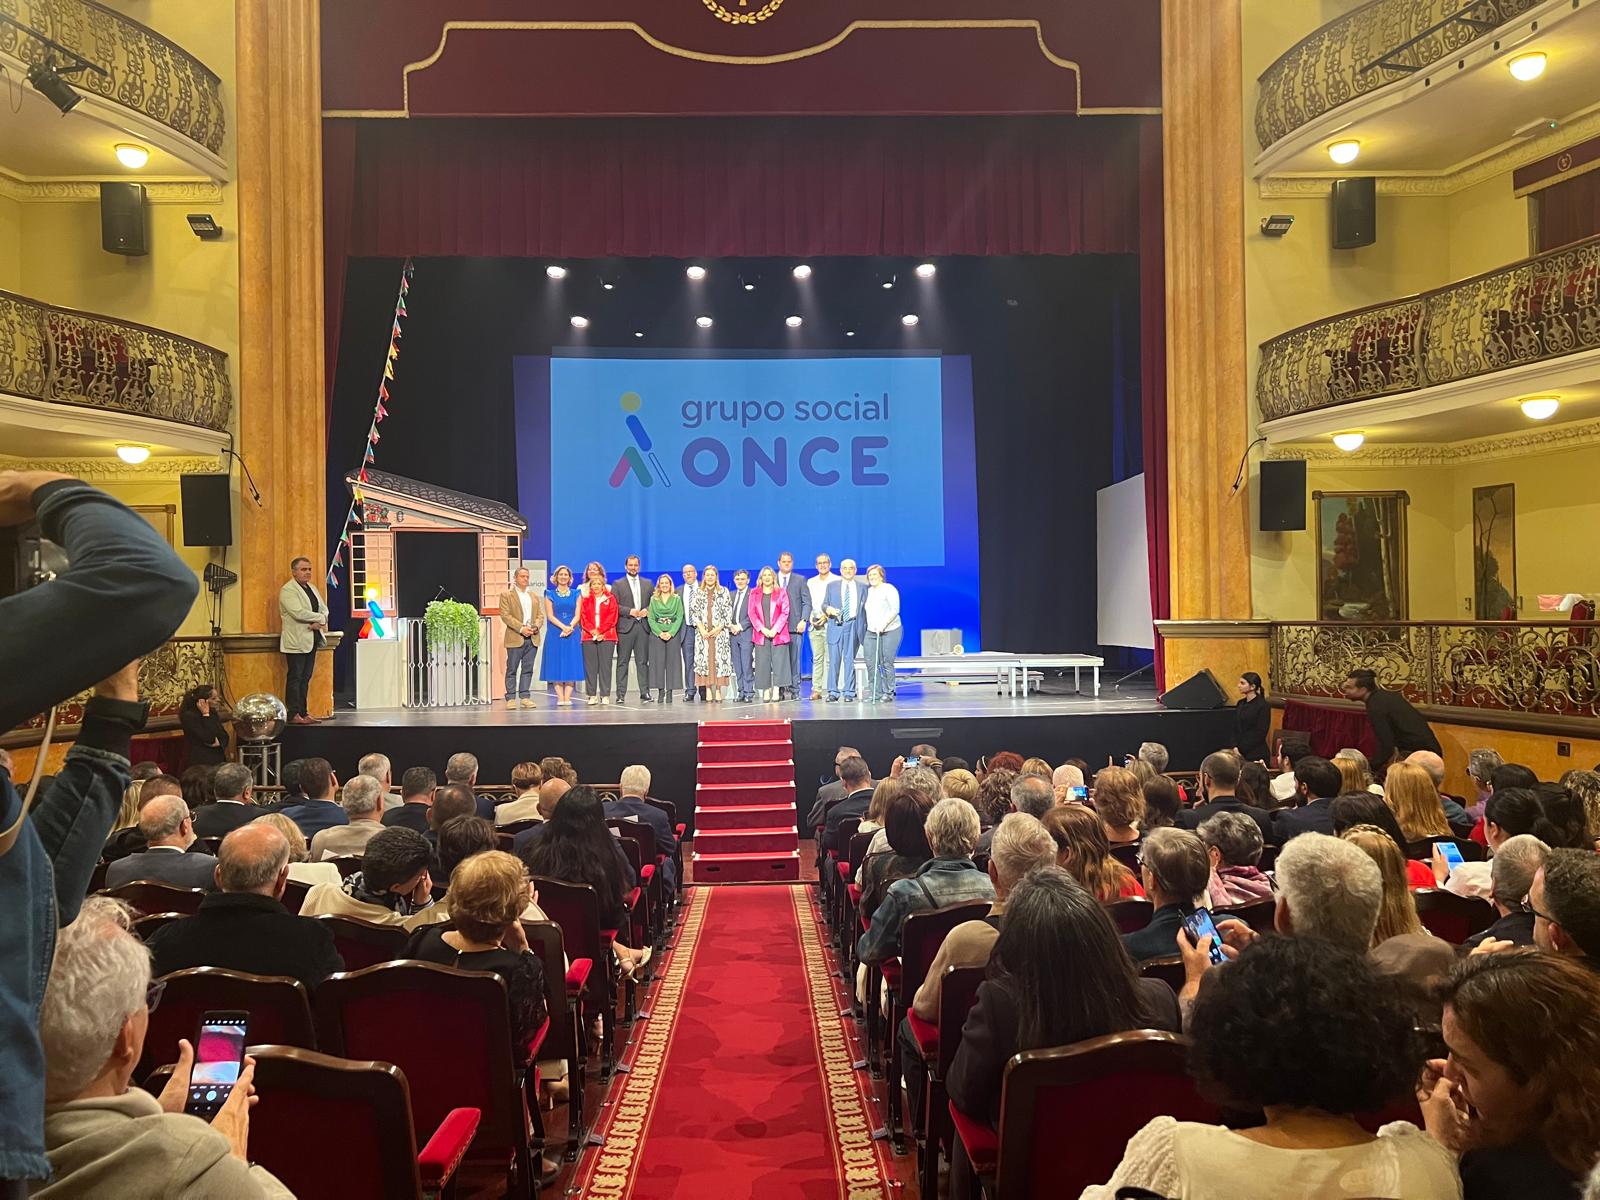 Foto desde la última fila del teatro con todos los premiados y autoridades en el escenario, en la pantalla del fondo un gran logo del Grupo Social ONCE